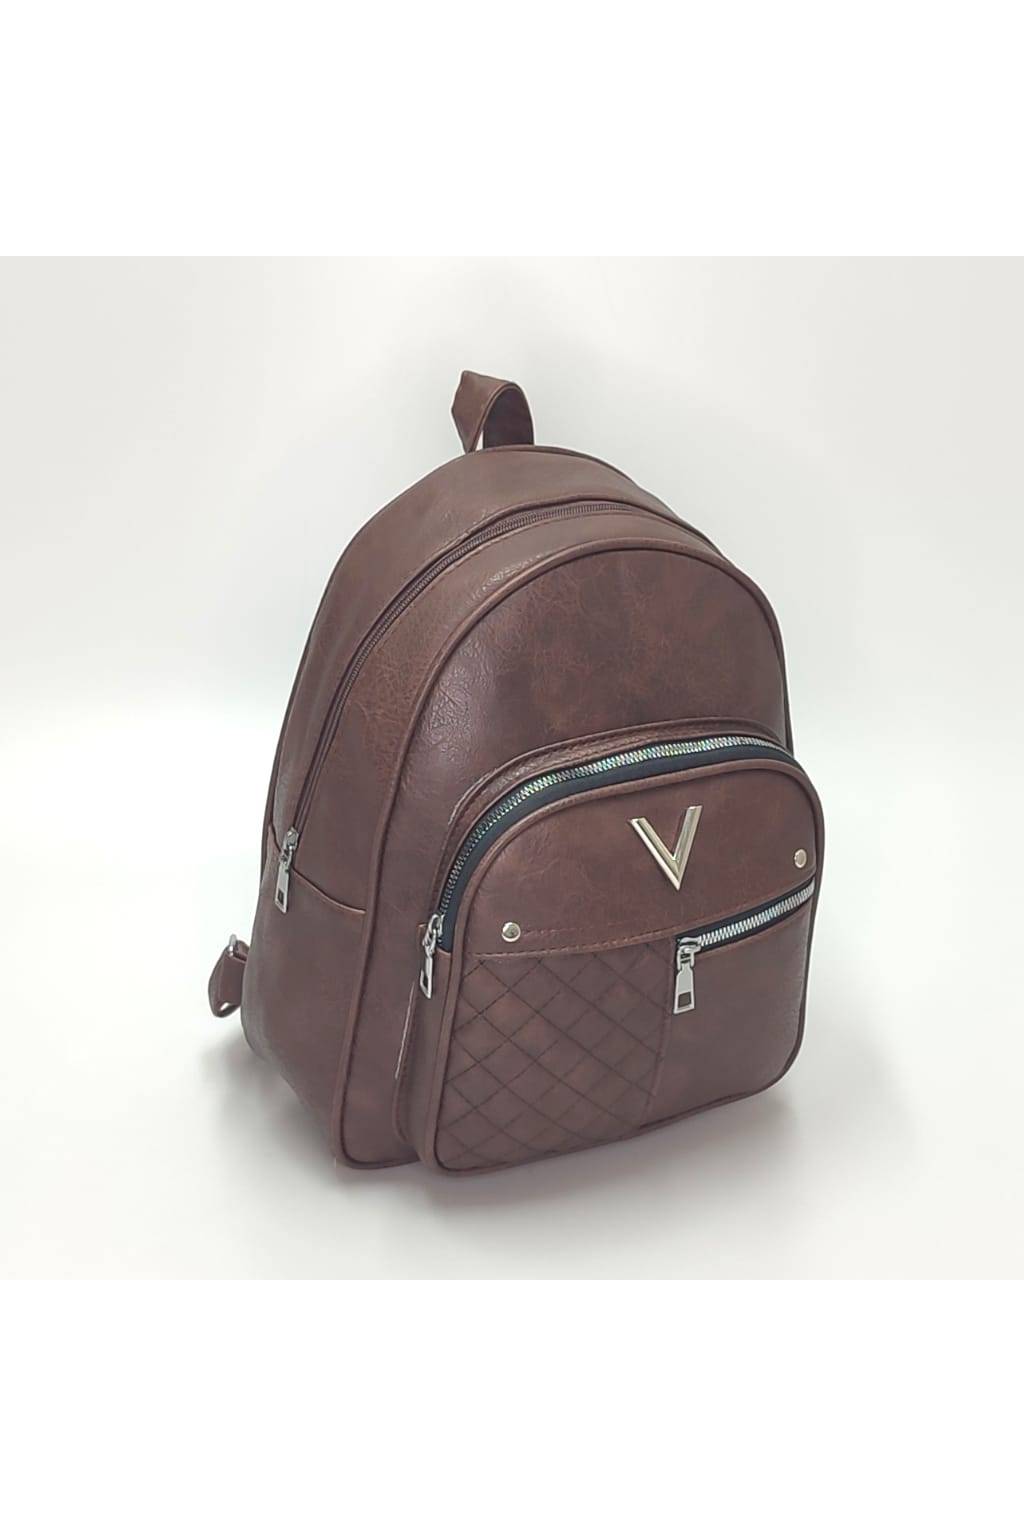 Dámsky ruksak 2481 čokoládový www.kabelky vypredaj (2)